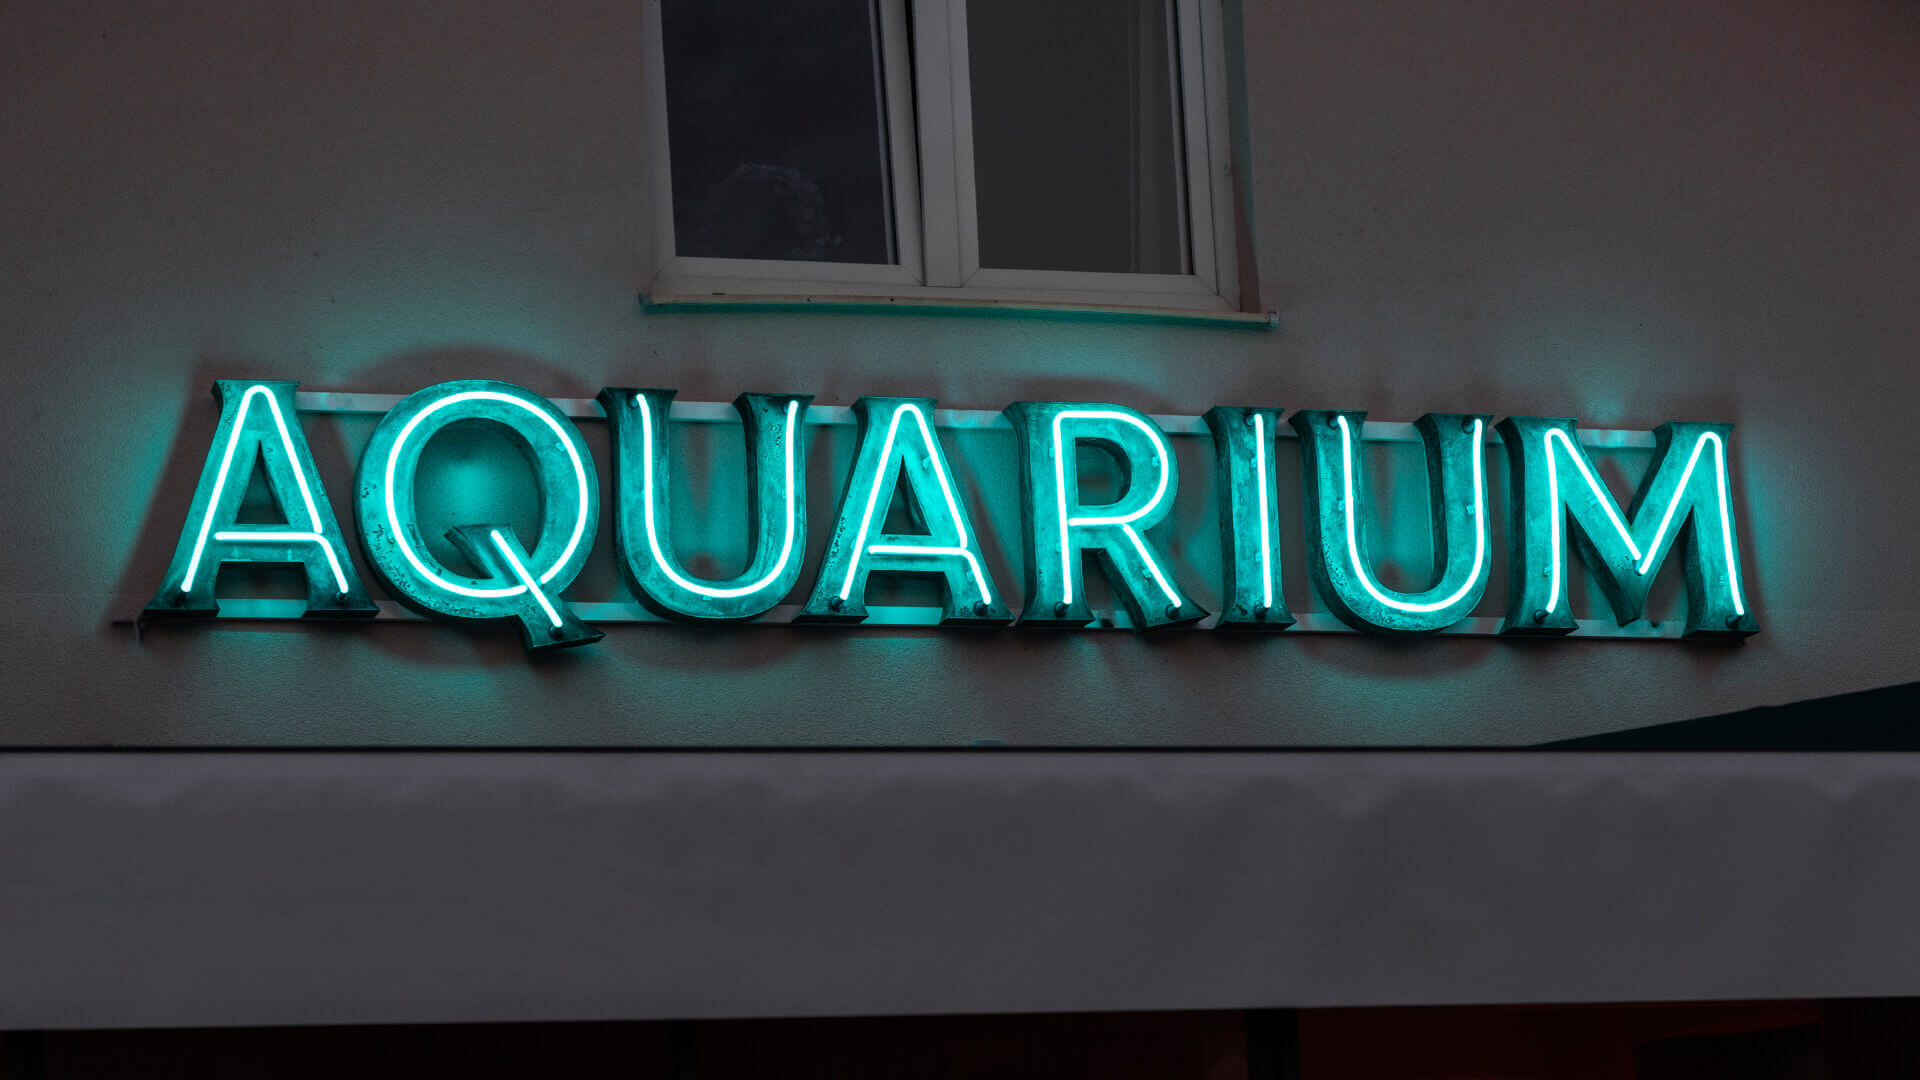 aquarium akwarium - aquarium-neon-na-scianie-budynku-litery-pokryte-patyna-neon-nad-wejsciem-do-restauracji-zielony-neon-na-elewacji-budynkui-neon-na-stelazu-podswietlany-szklo (31).jpg